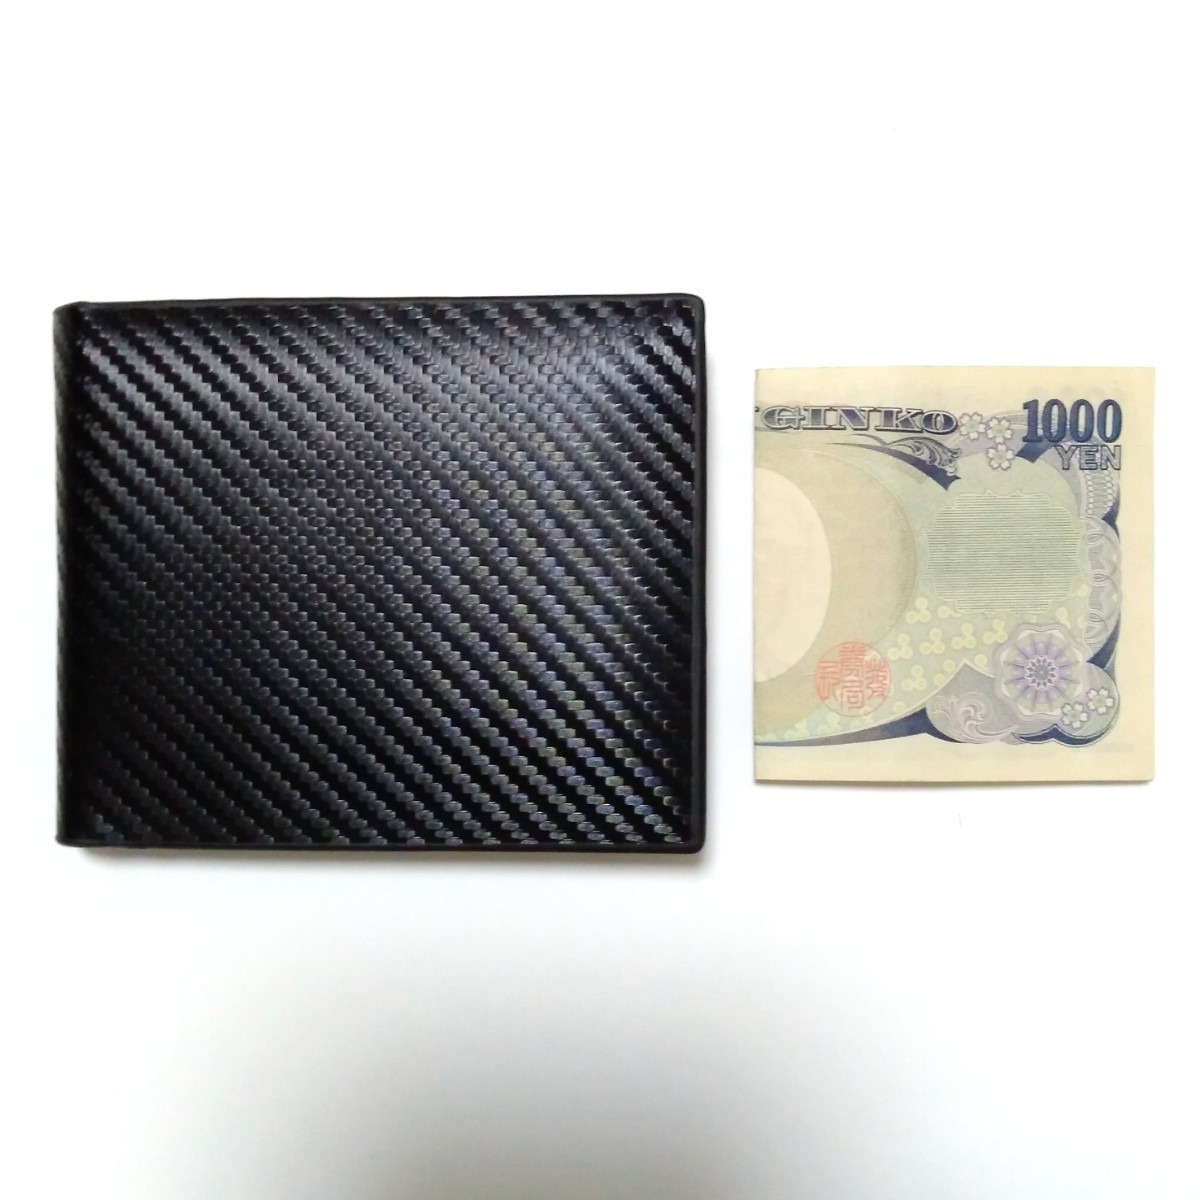 2つ折り財布 カラー：ブラック カーボン調 スリム 小さい コンパクト 黒 お札入れ カード入れ 小銭入れ ビジネス おしゃれ メンズ 合皮_大きさの比較に千円札を置いています